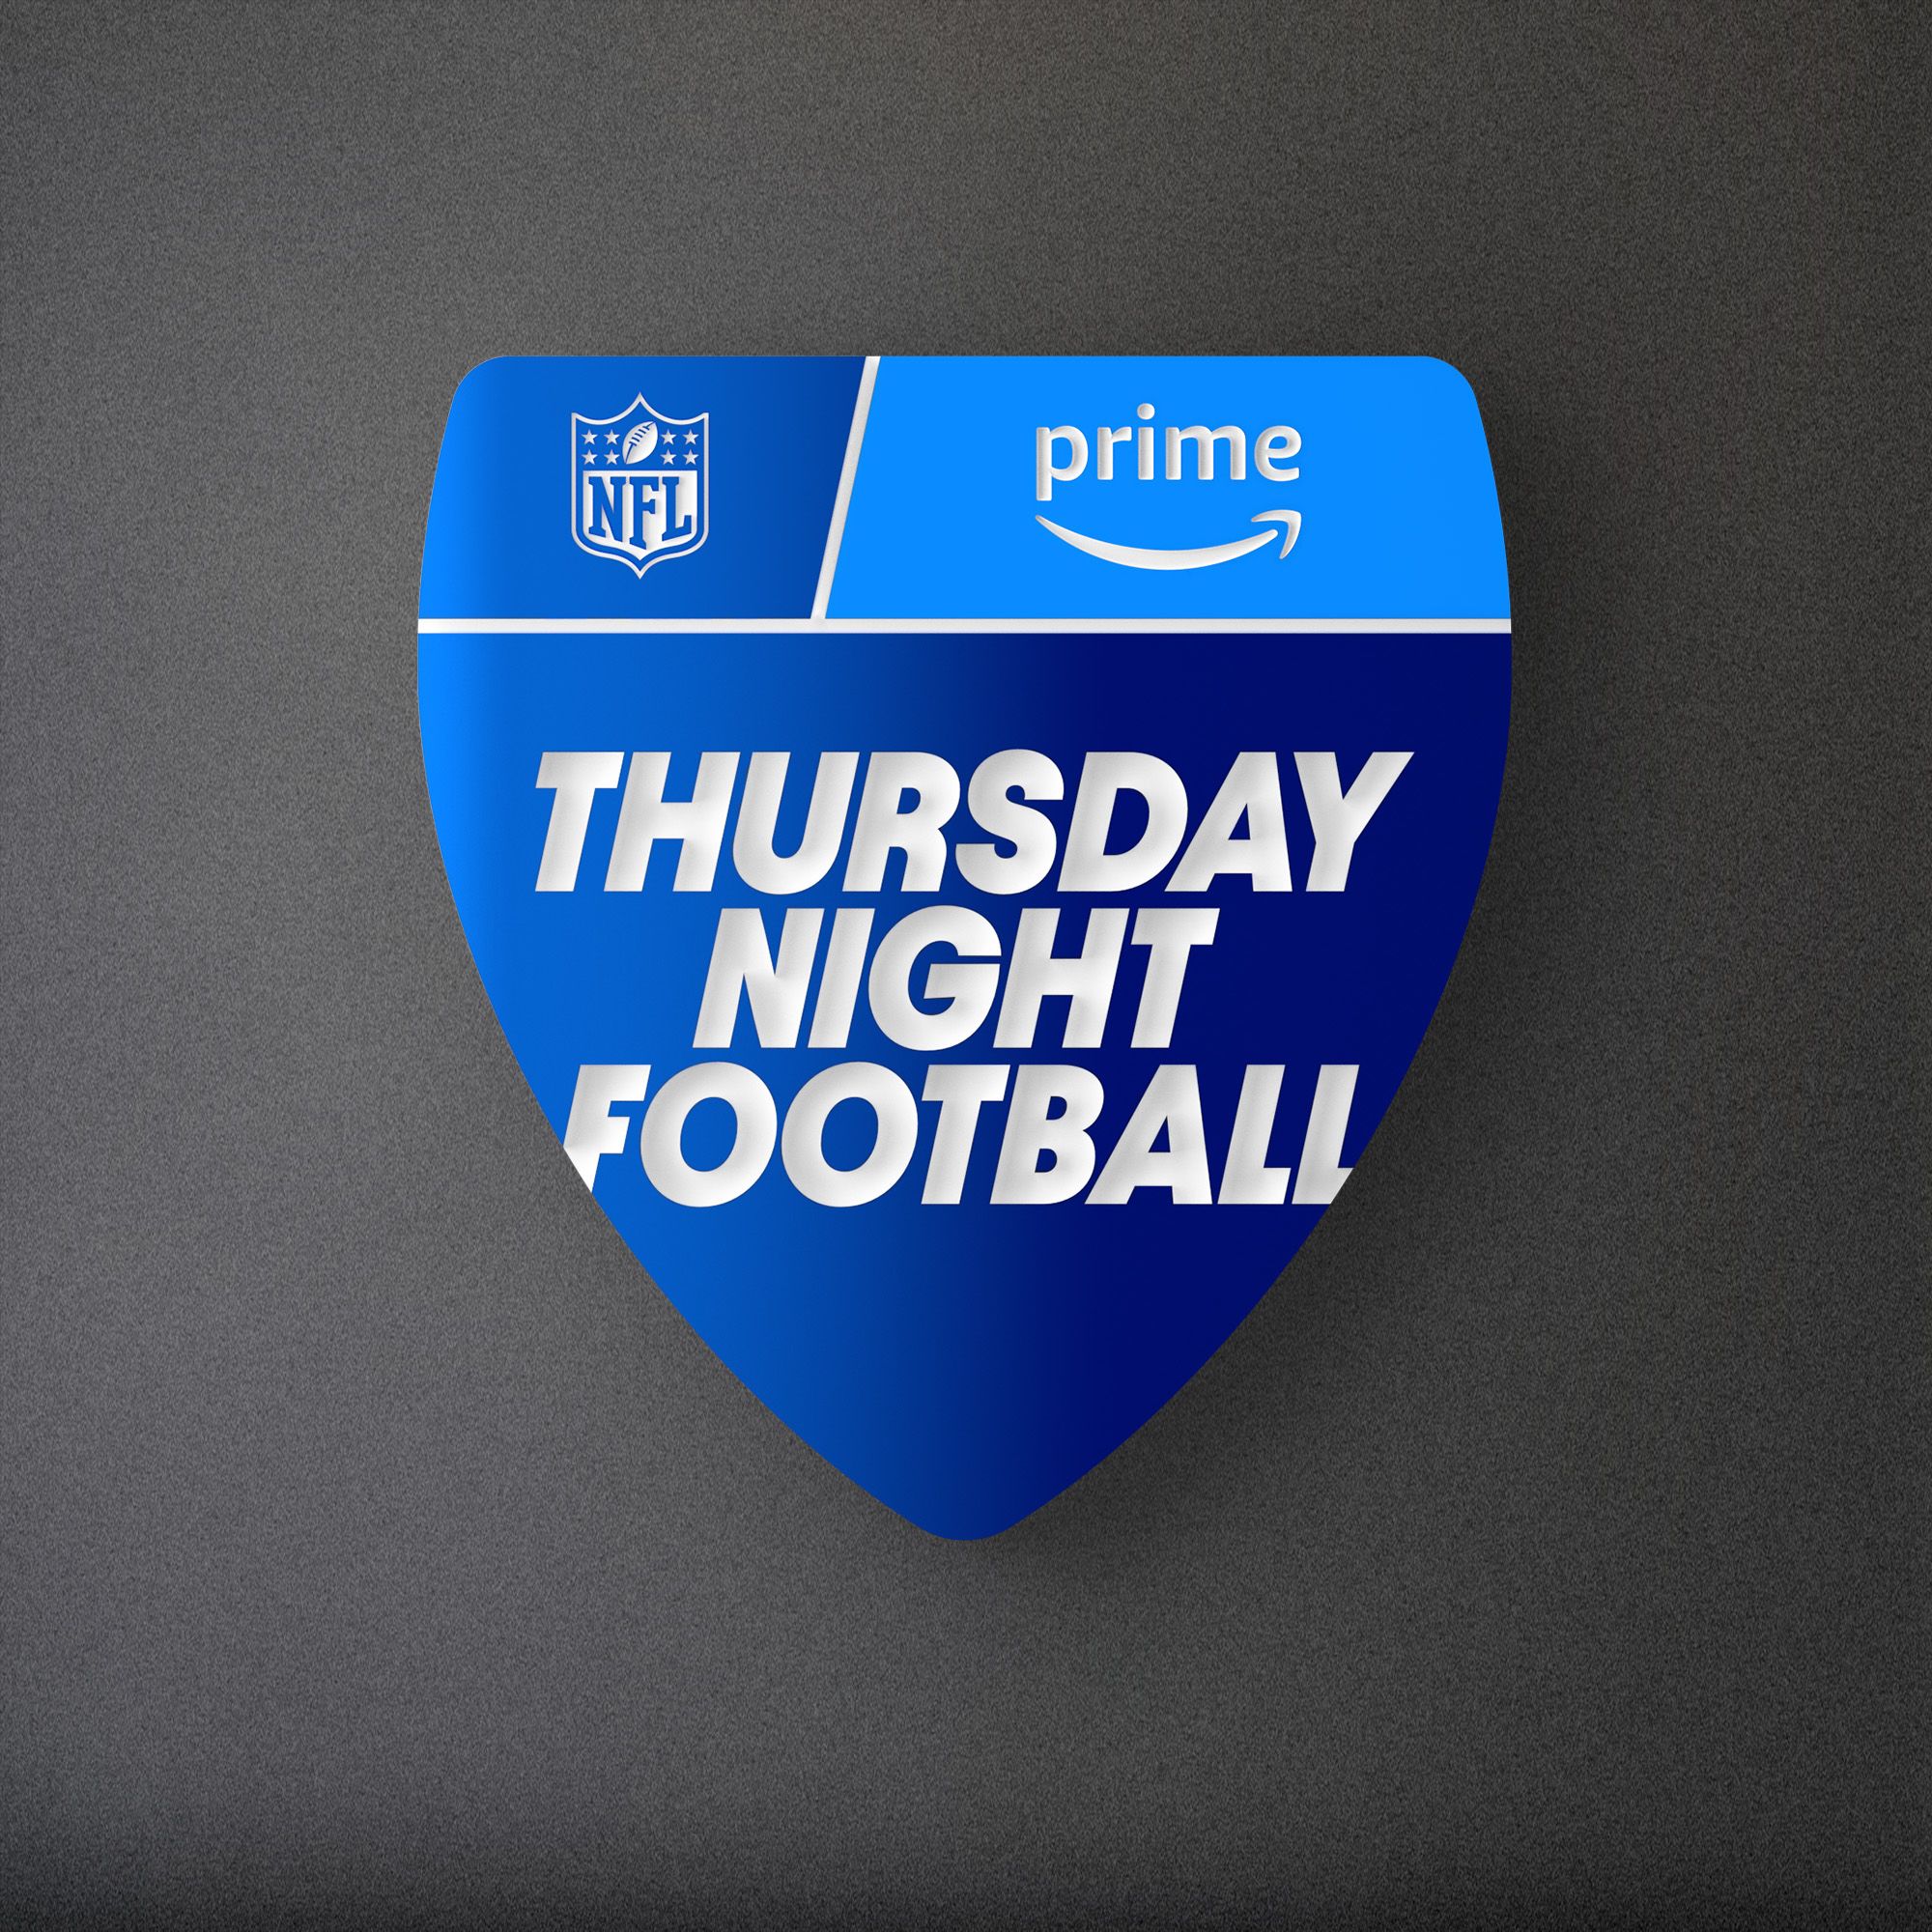 find thursday night football